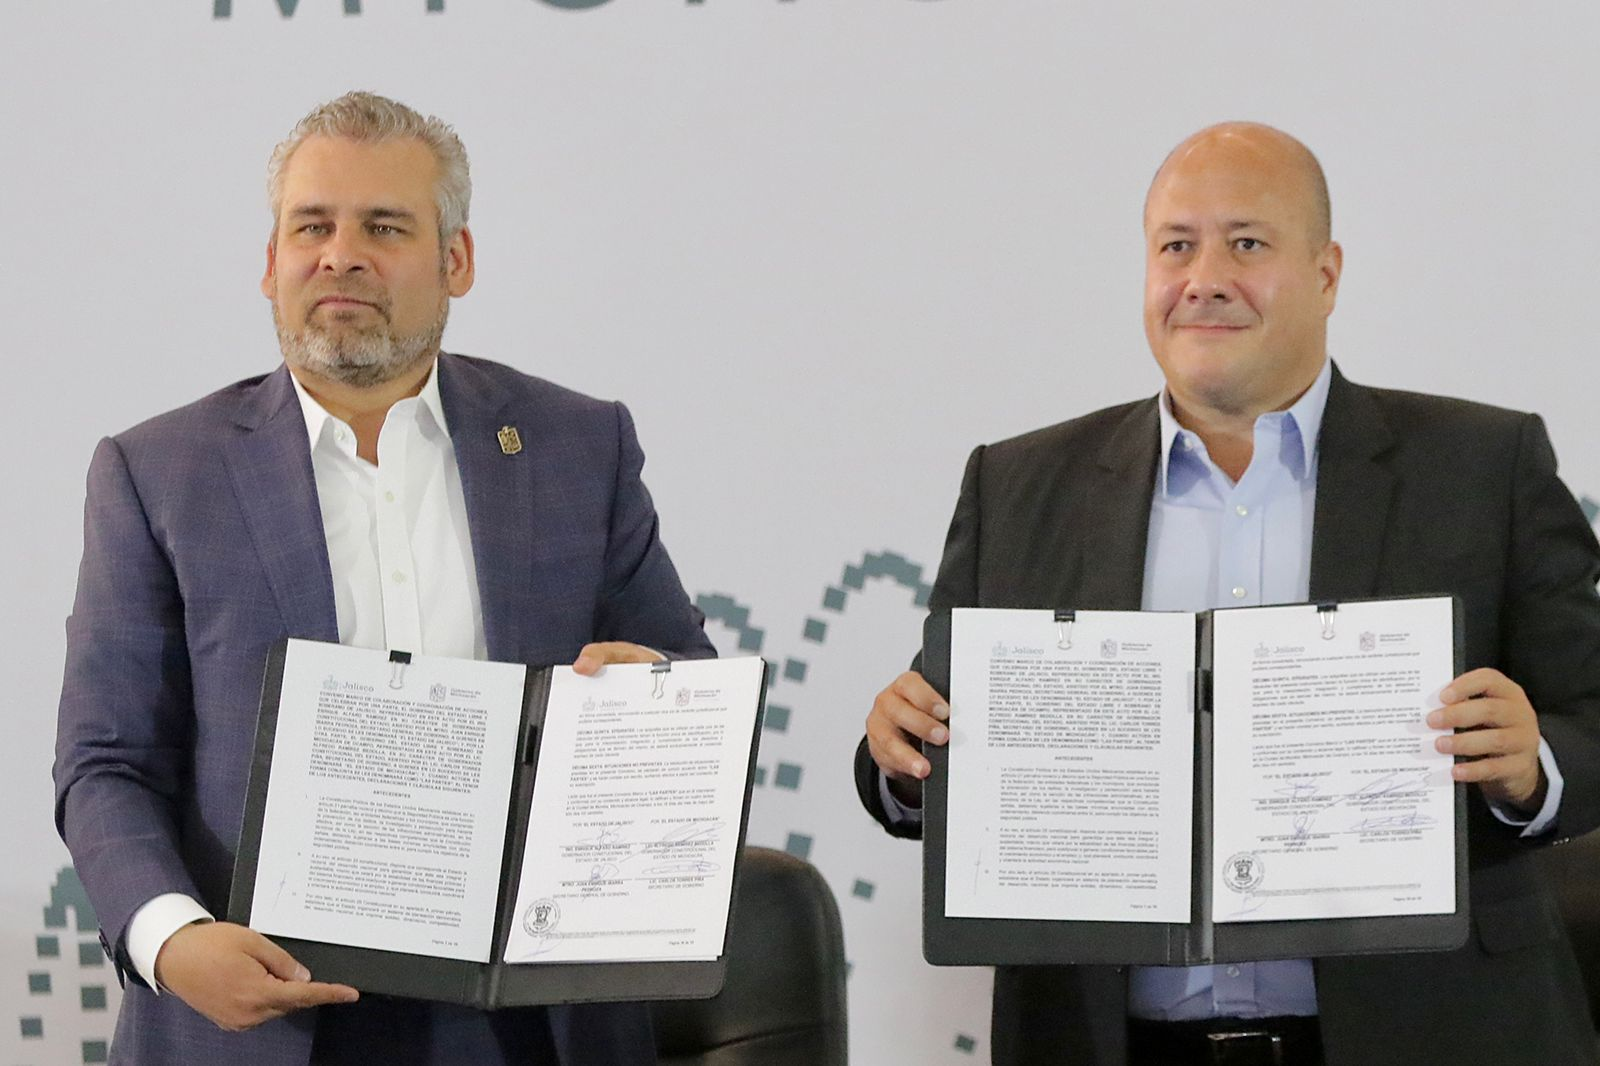 Convenio entre Michoacán y Jalisco busca fortalecer la seguridad y el desarrollo regional